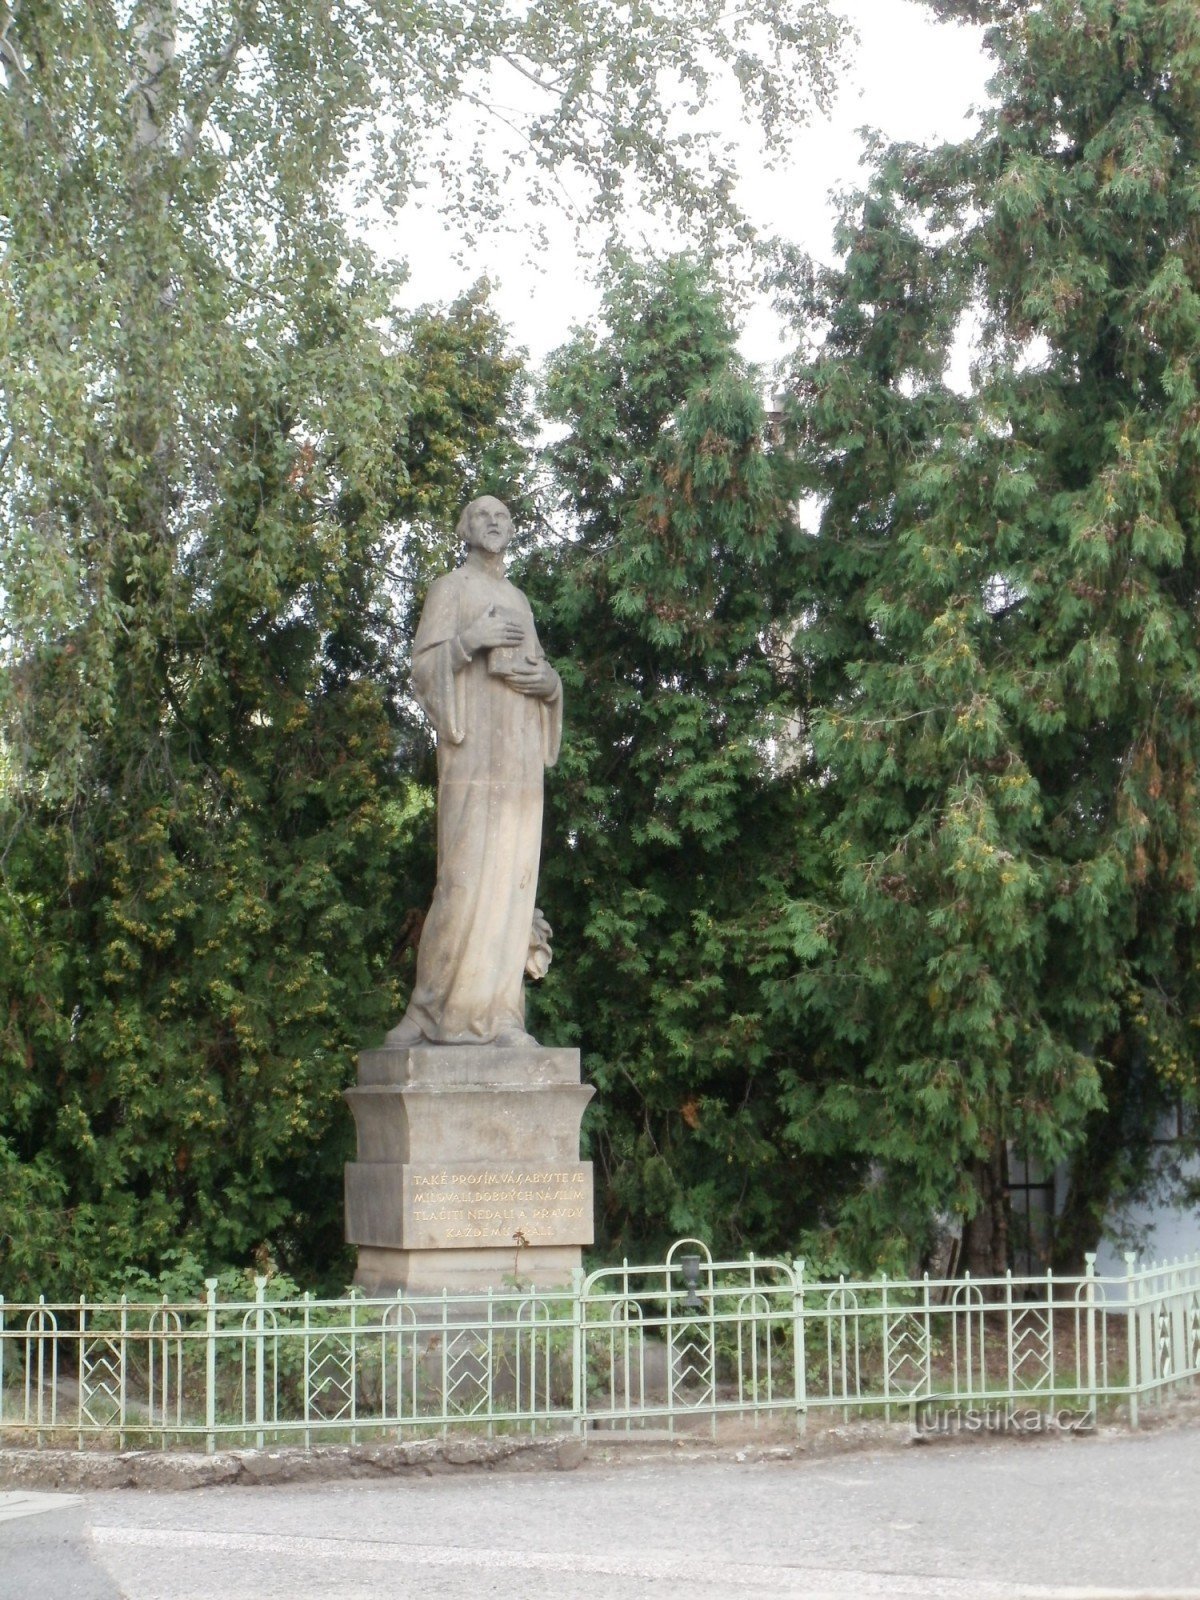 Градец Кралове - пам'ятник майстру Яну Гусу